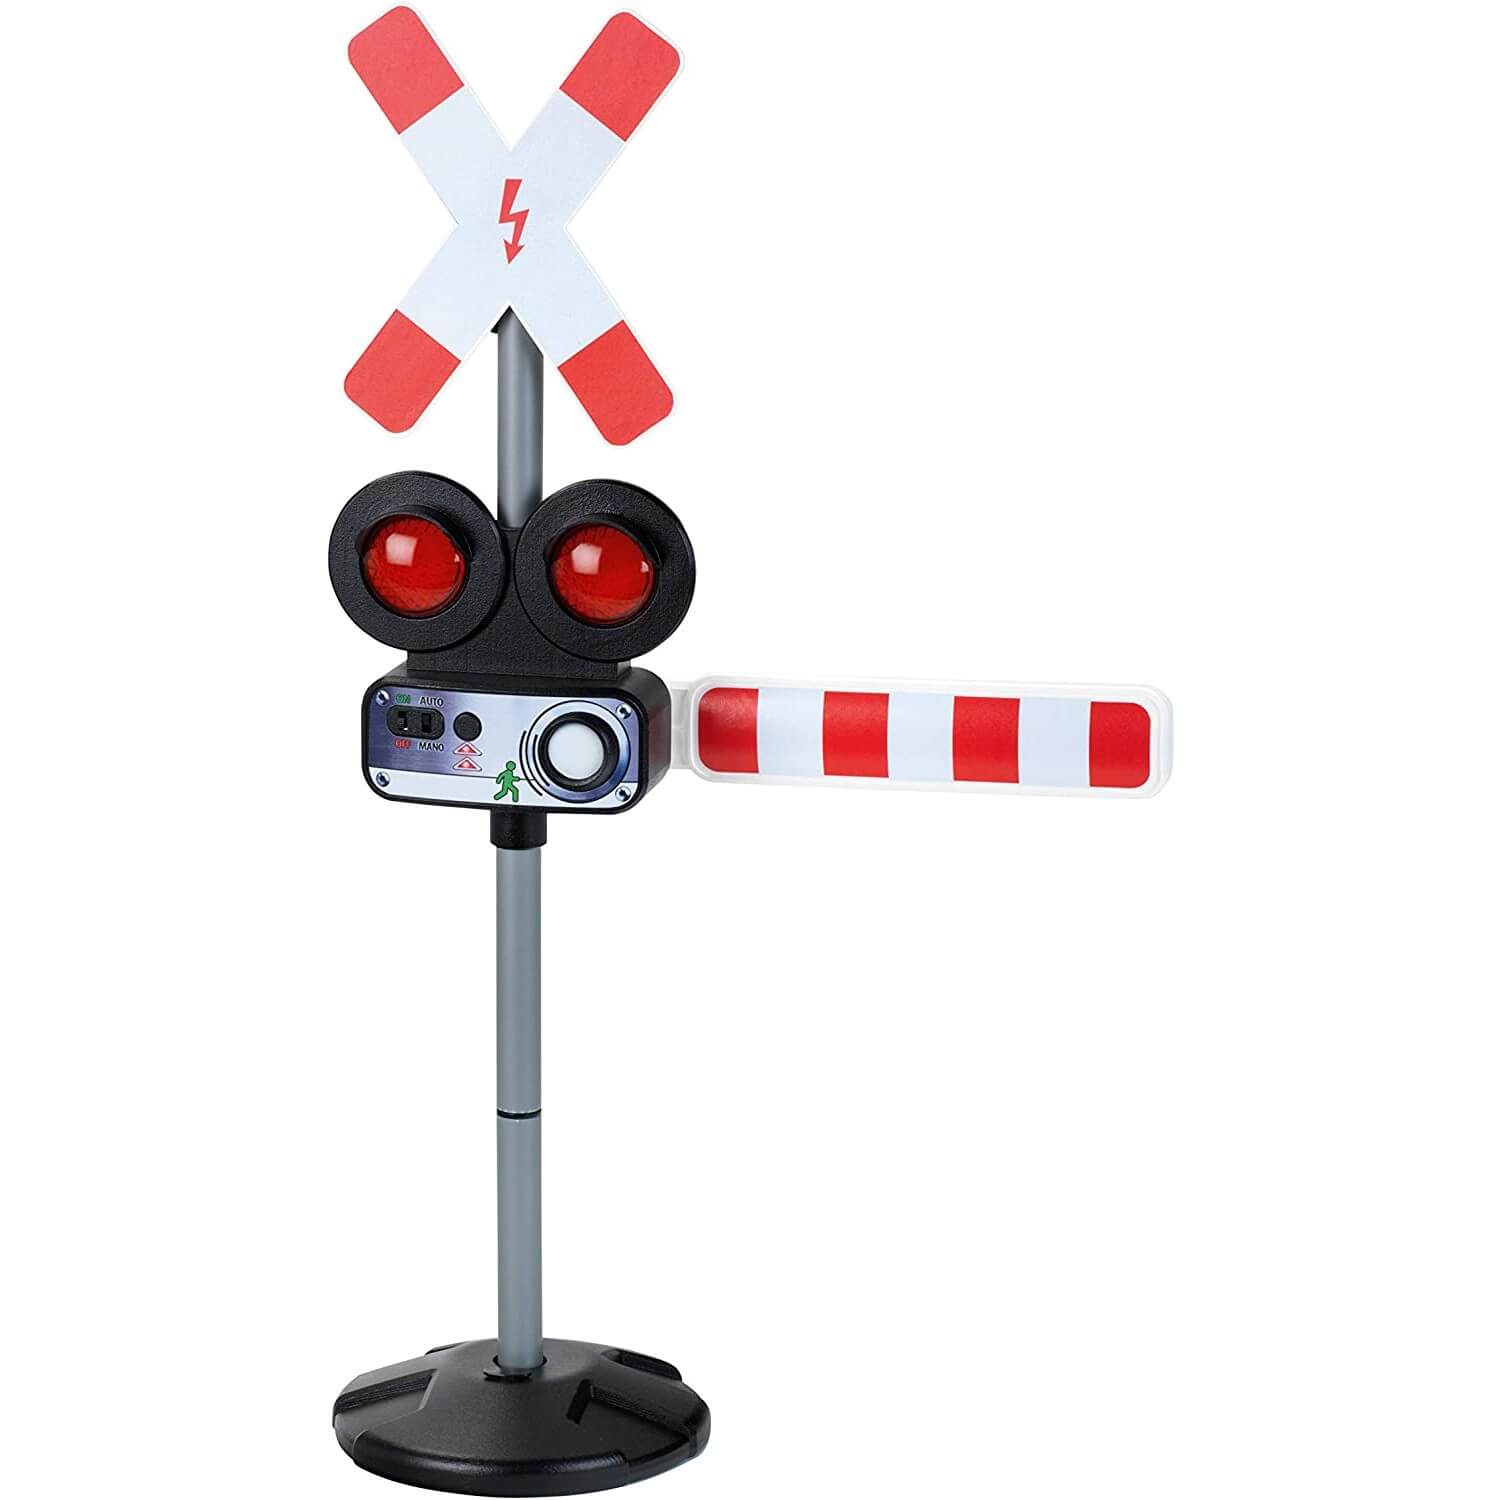 Set de 5 panneaux de signalisation routière pour enfant - KLEIN